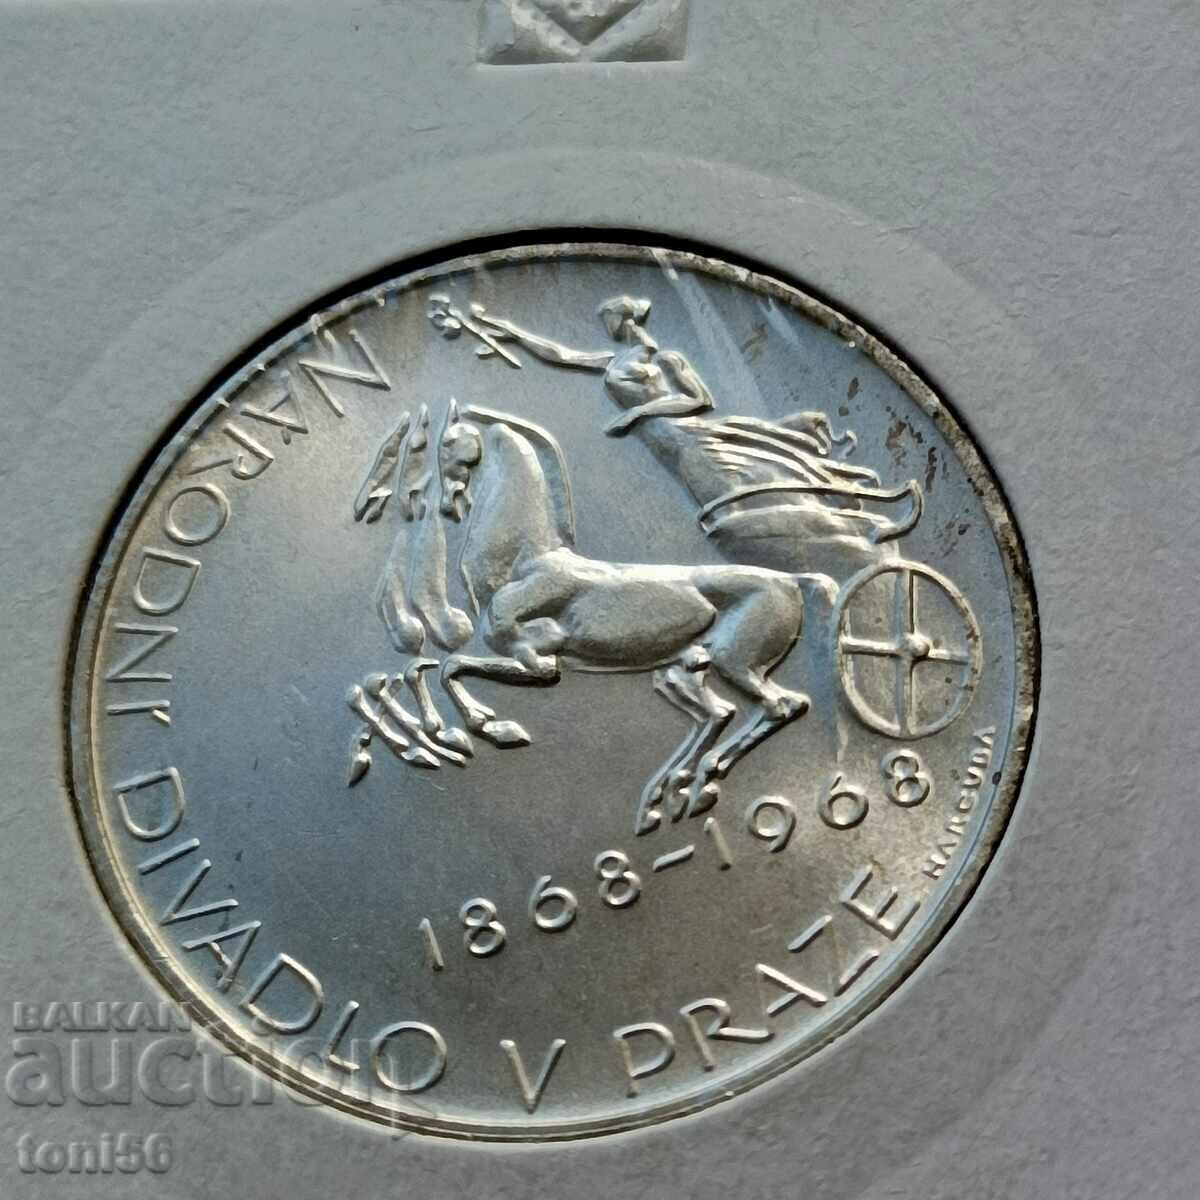 Czechoslovakia 10 kroner 1968 UNC - Silver